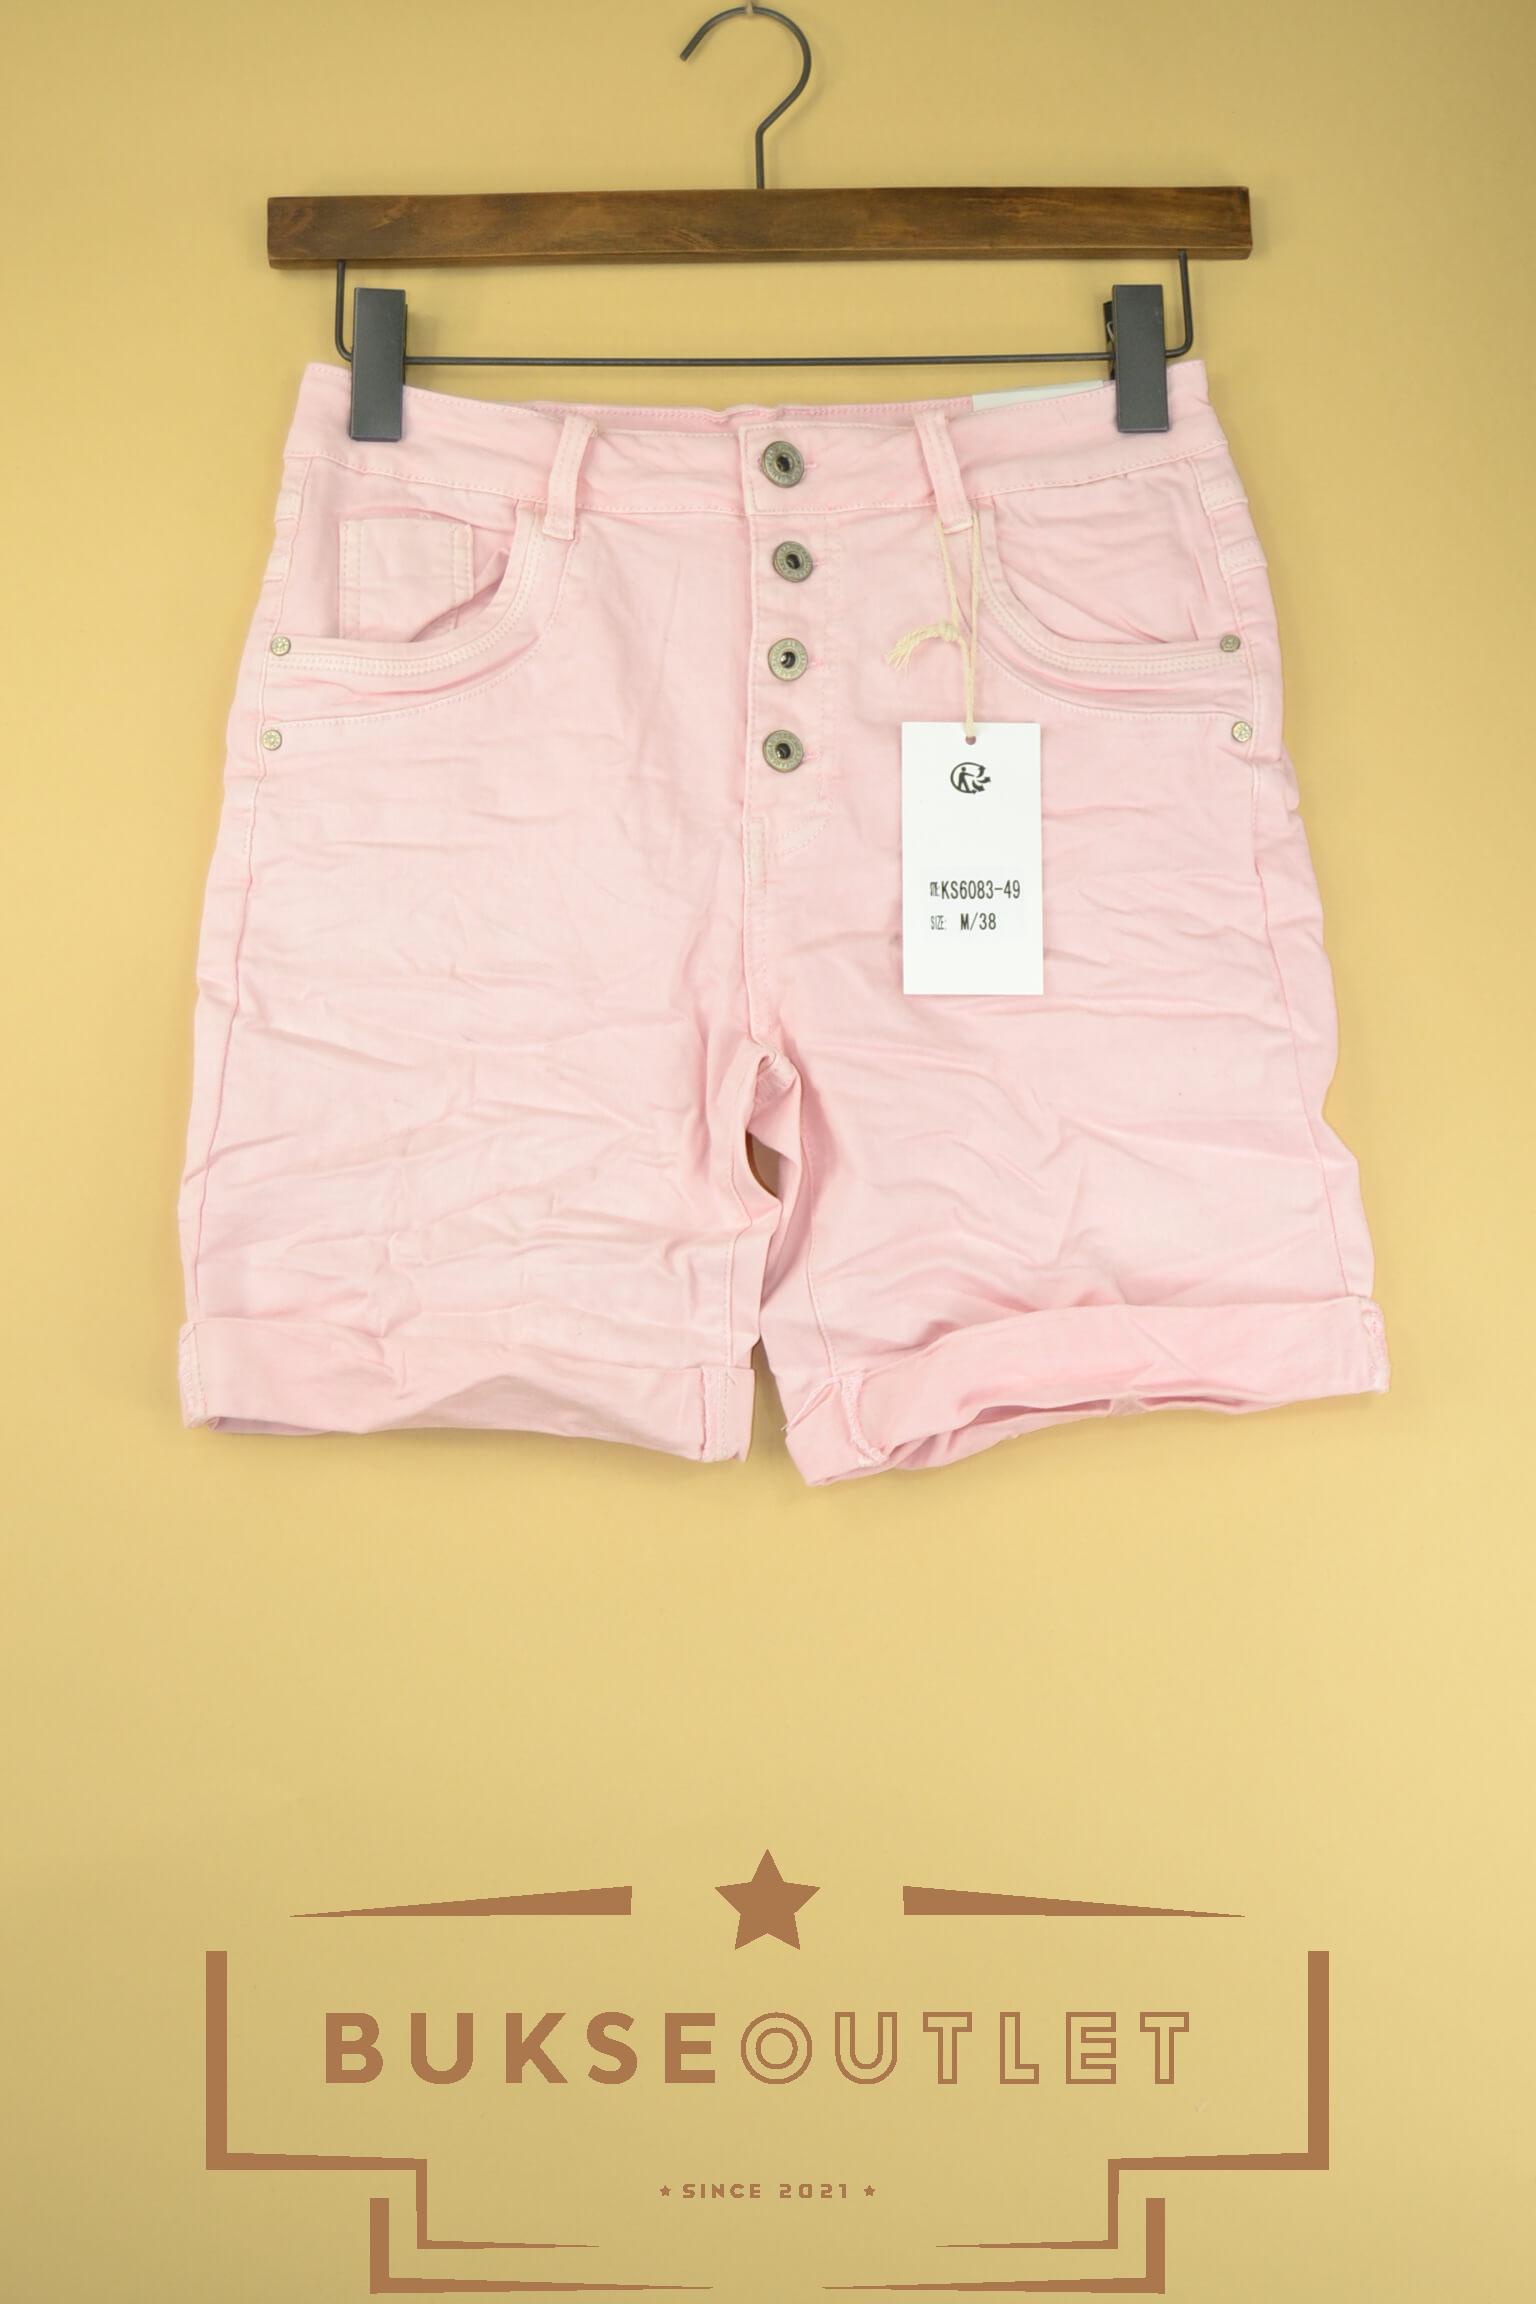 Karostar KS6083-49 shorts